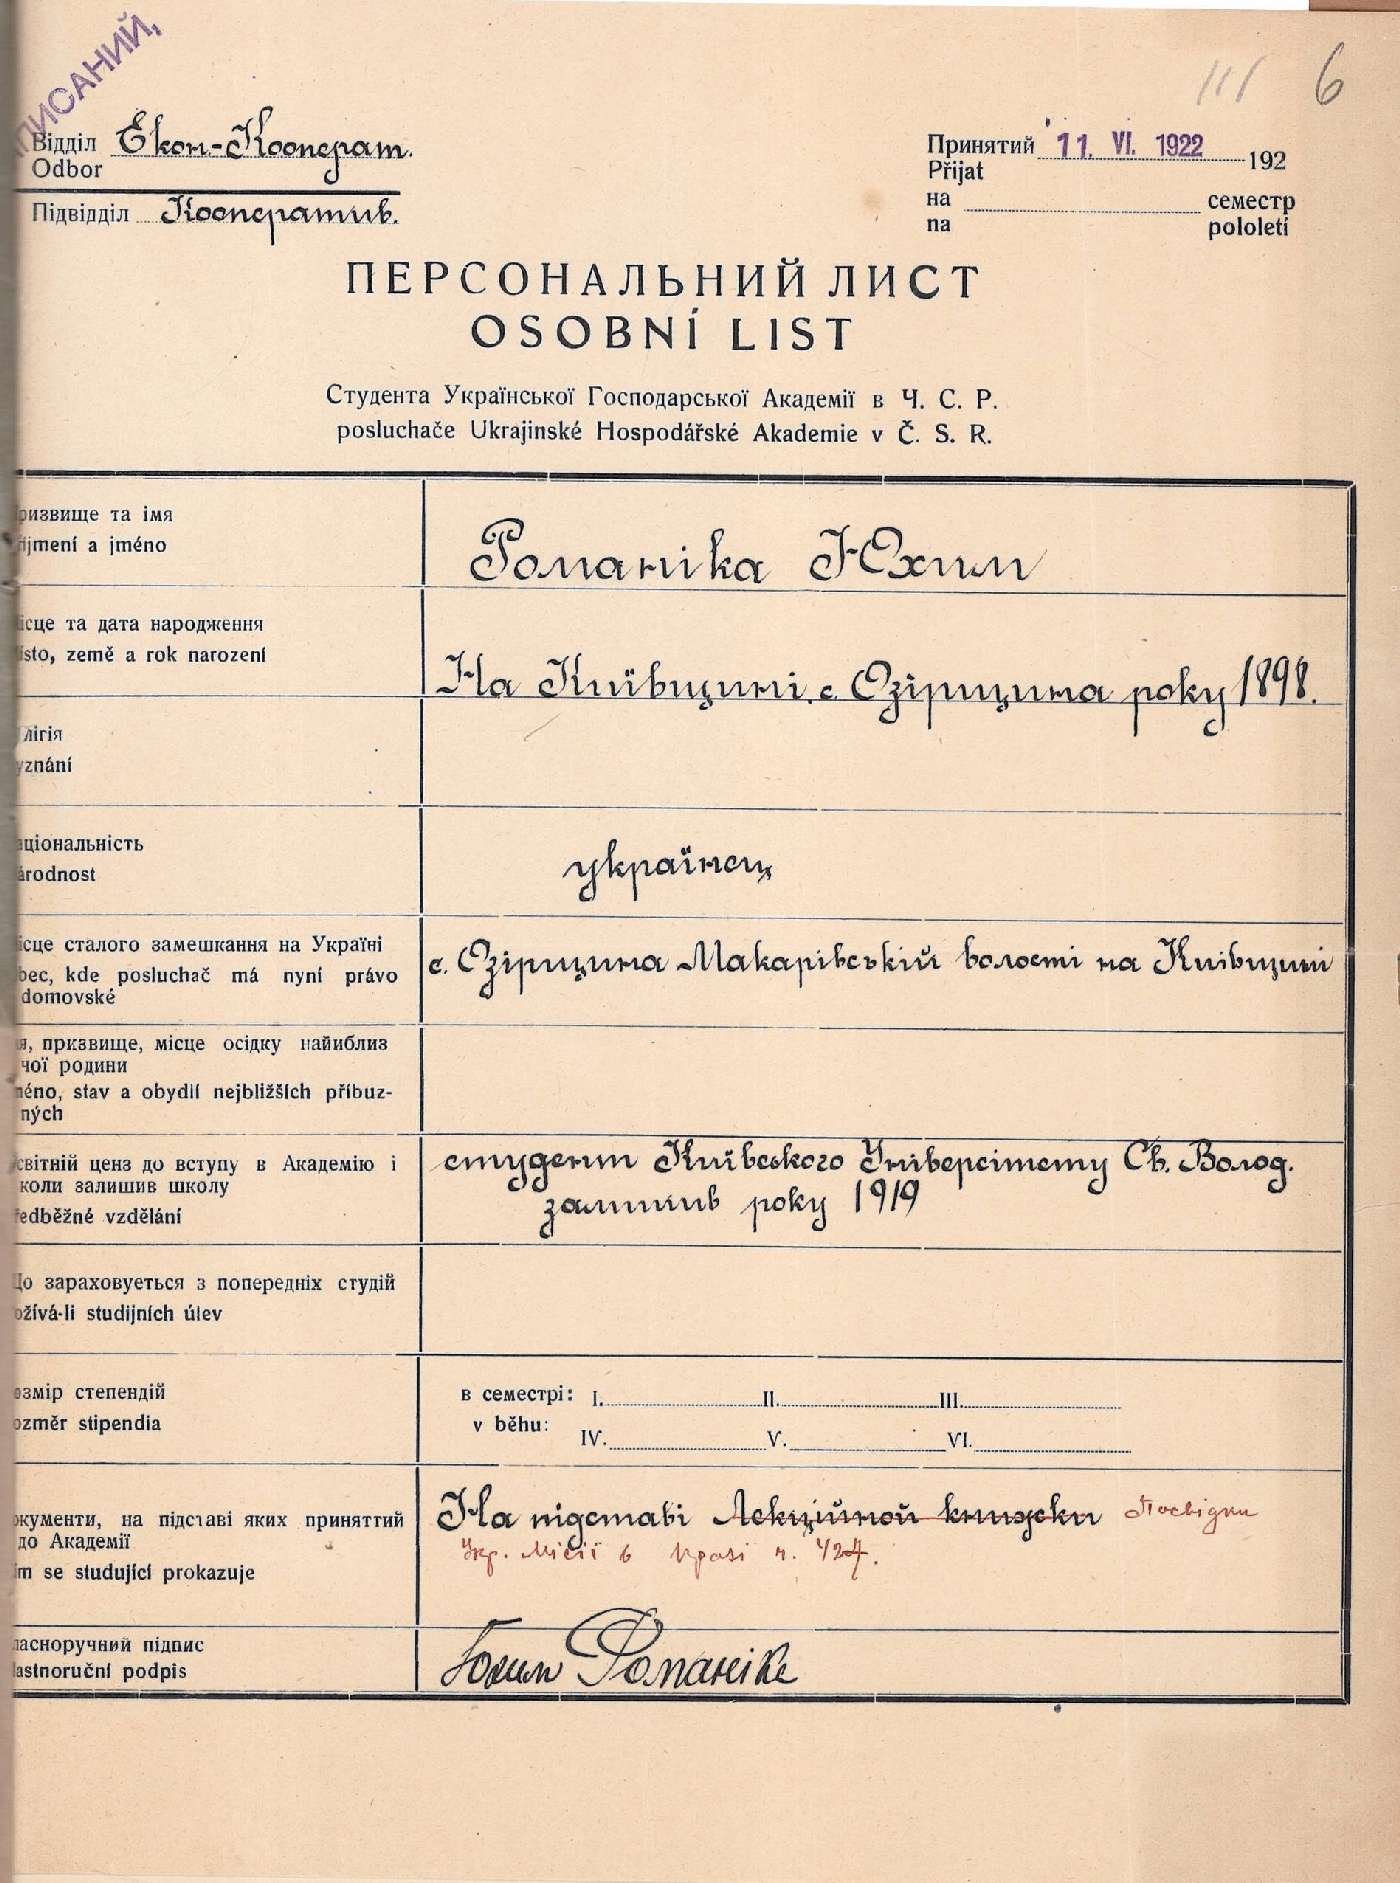 Персональний лист студента Української господарської академії в ЧСР Юхима Романіка. 11 червня 1922 р.